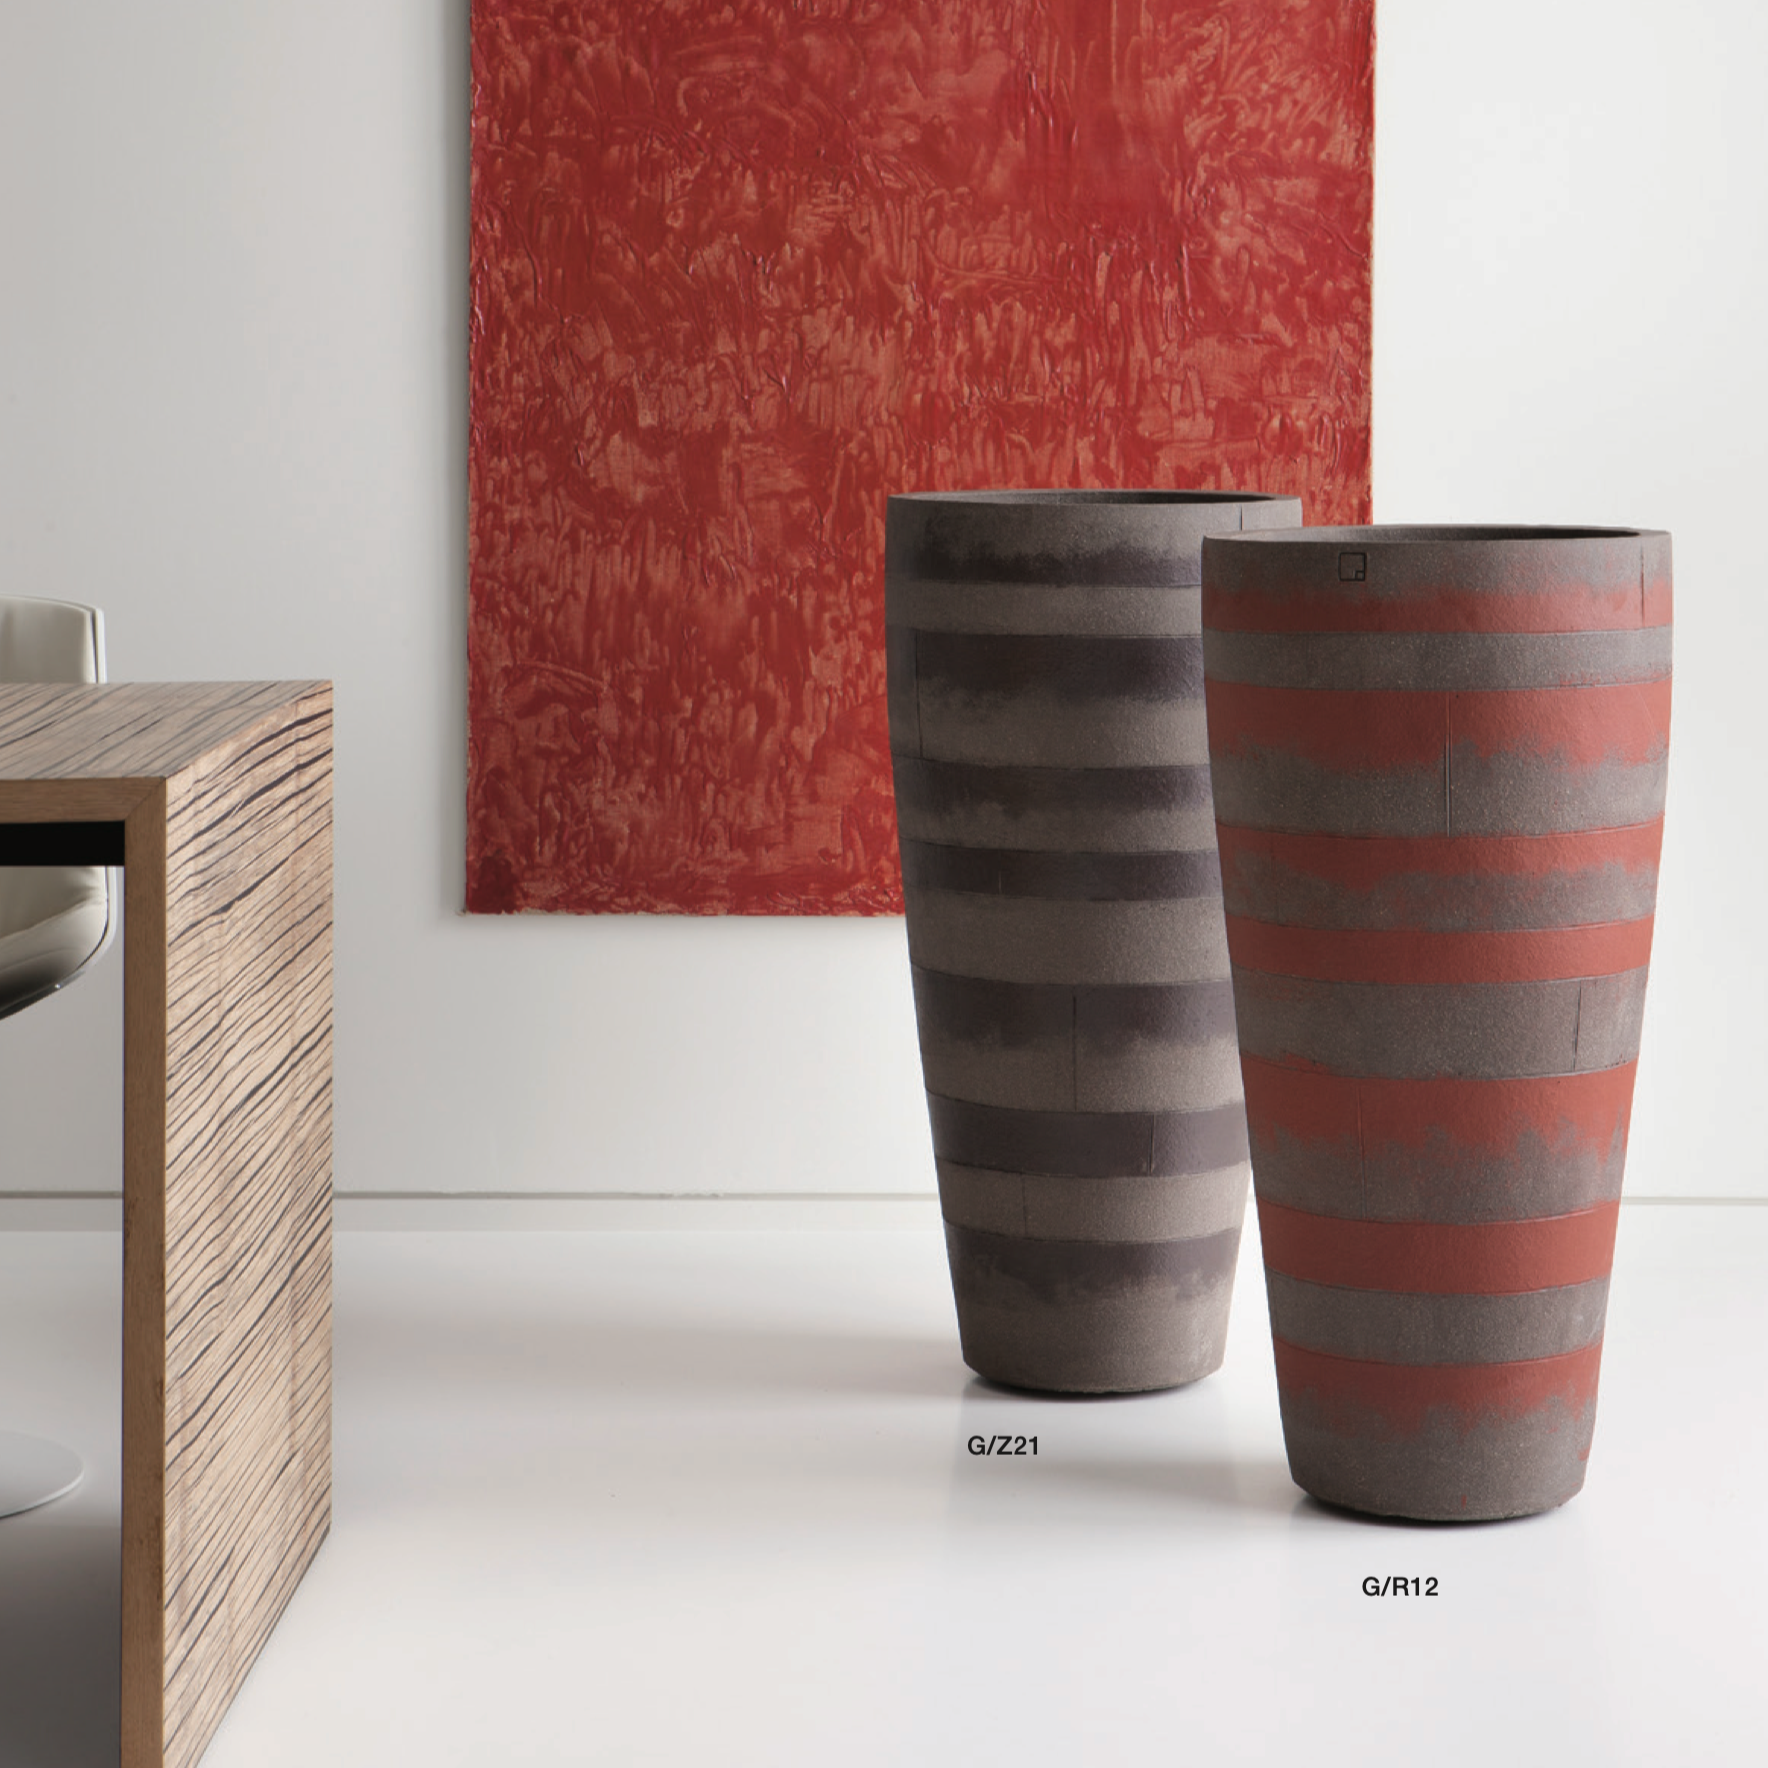 Zwei Atelier Vierkant Blumentröge eines in schwarz mit roten wagerechten Streifen, das 2 Gefäß ist weiss mit grauen wagerechten Streifen. Beide Gefäße stehen im Wohnbereich nebeneinander vor einer weißen Wand. 